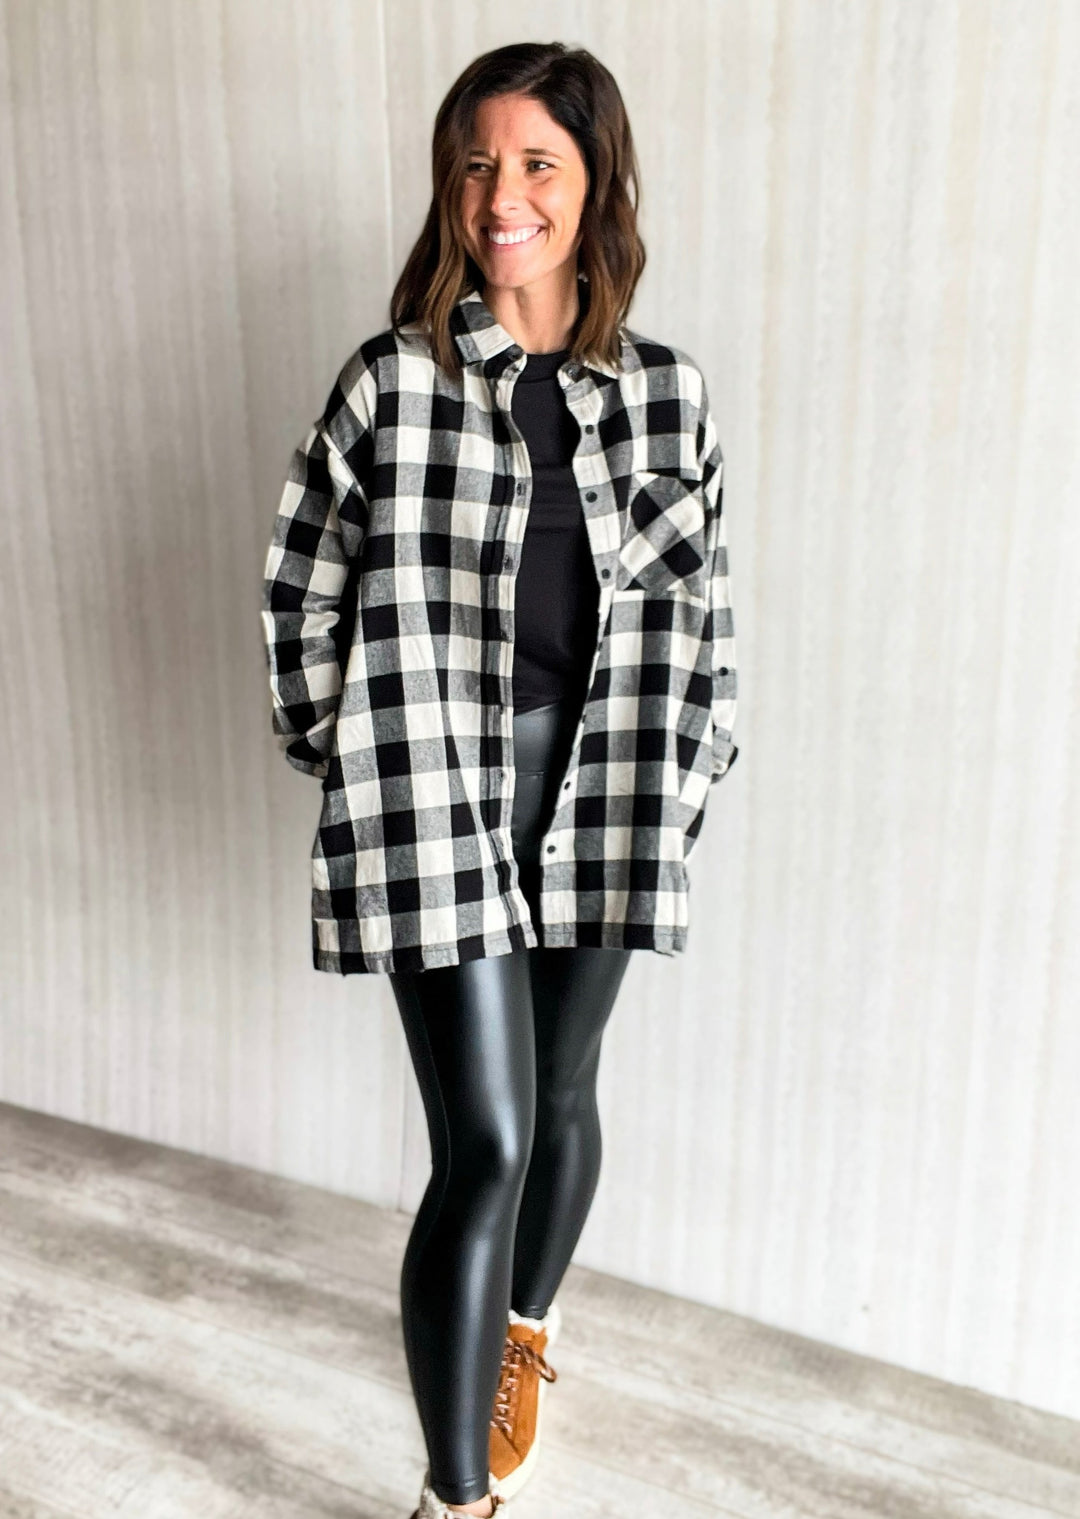 Black & White Buffalo Plaid Check Flannel Shirt - Women's Plaid Tops